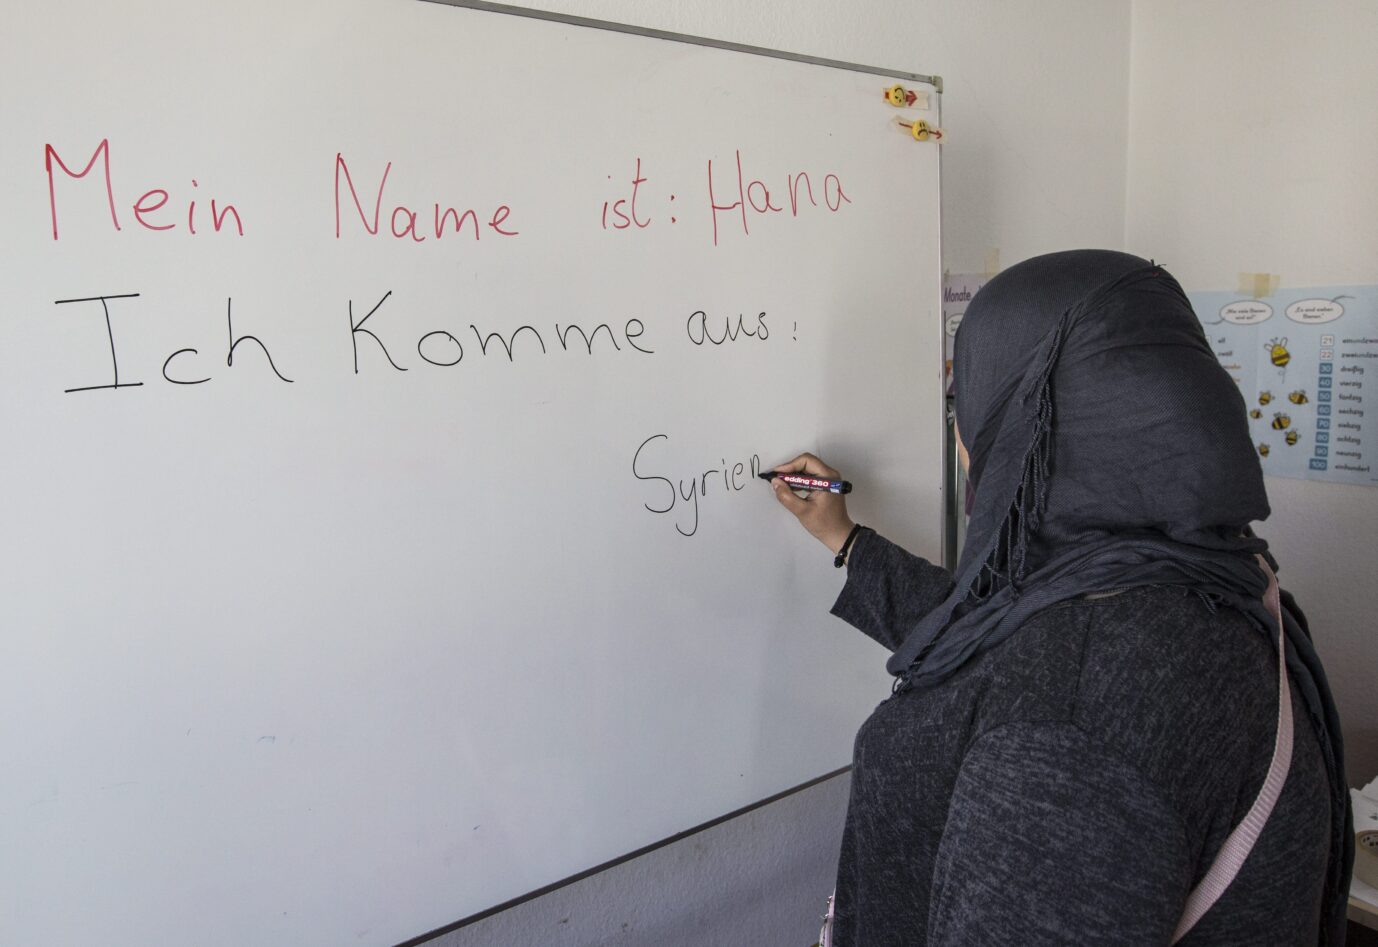  Deutschunterricht für Flüchtlinge und Asylsuchende in der Erstaufnahmeeinrichtung in der Ermekeilkaserne in Bonn. Muslima aus Syrien schreibt ihr Herkunftsland Syrien auf eine Tafel. Islamismus an deutschen Schulen ist ein wachsendes Problem.